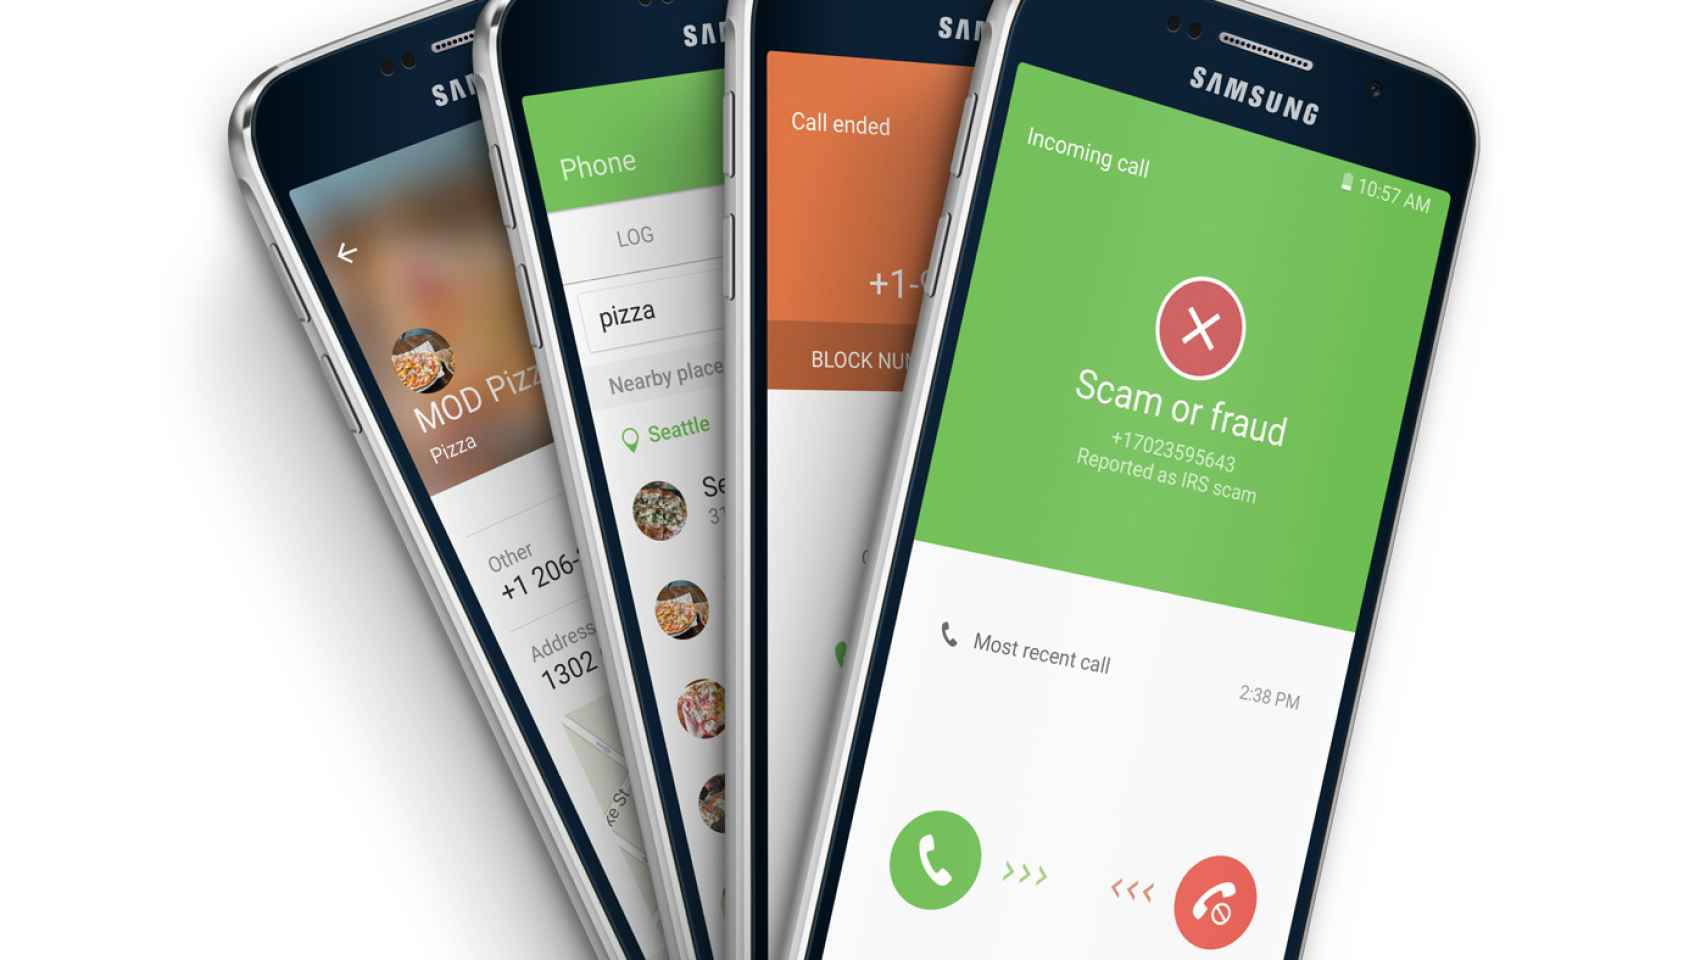 Whitepages, el identificador de llamadas integrado en el Samsung Galaxy S7